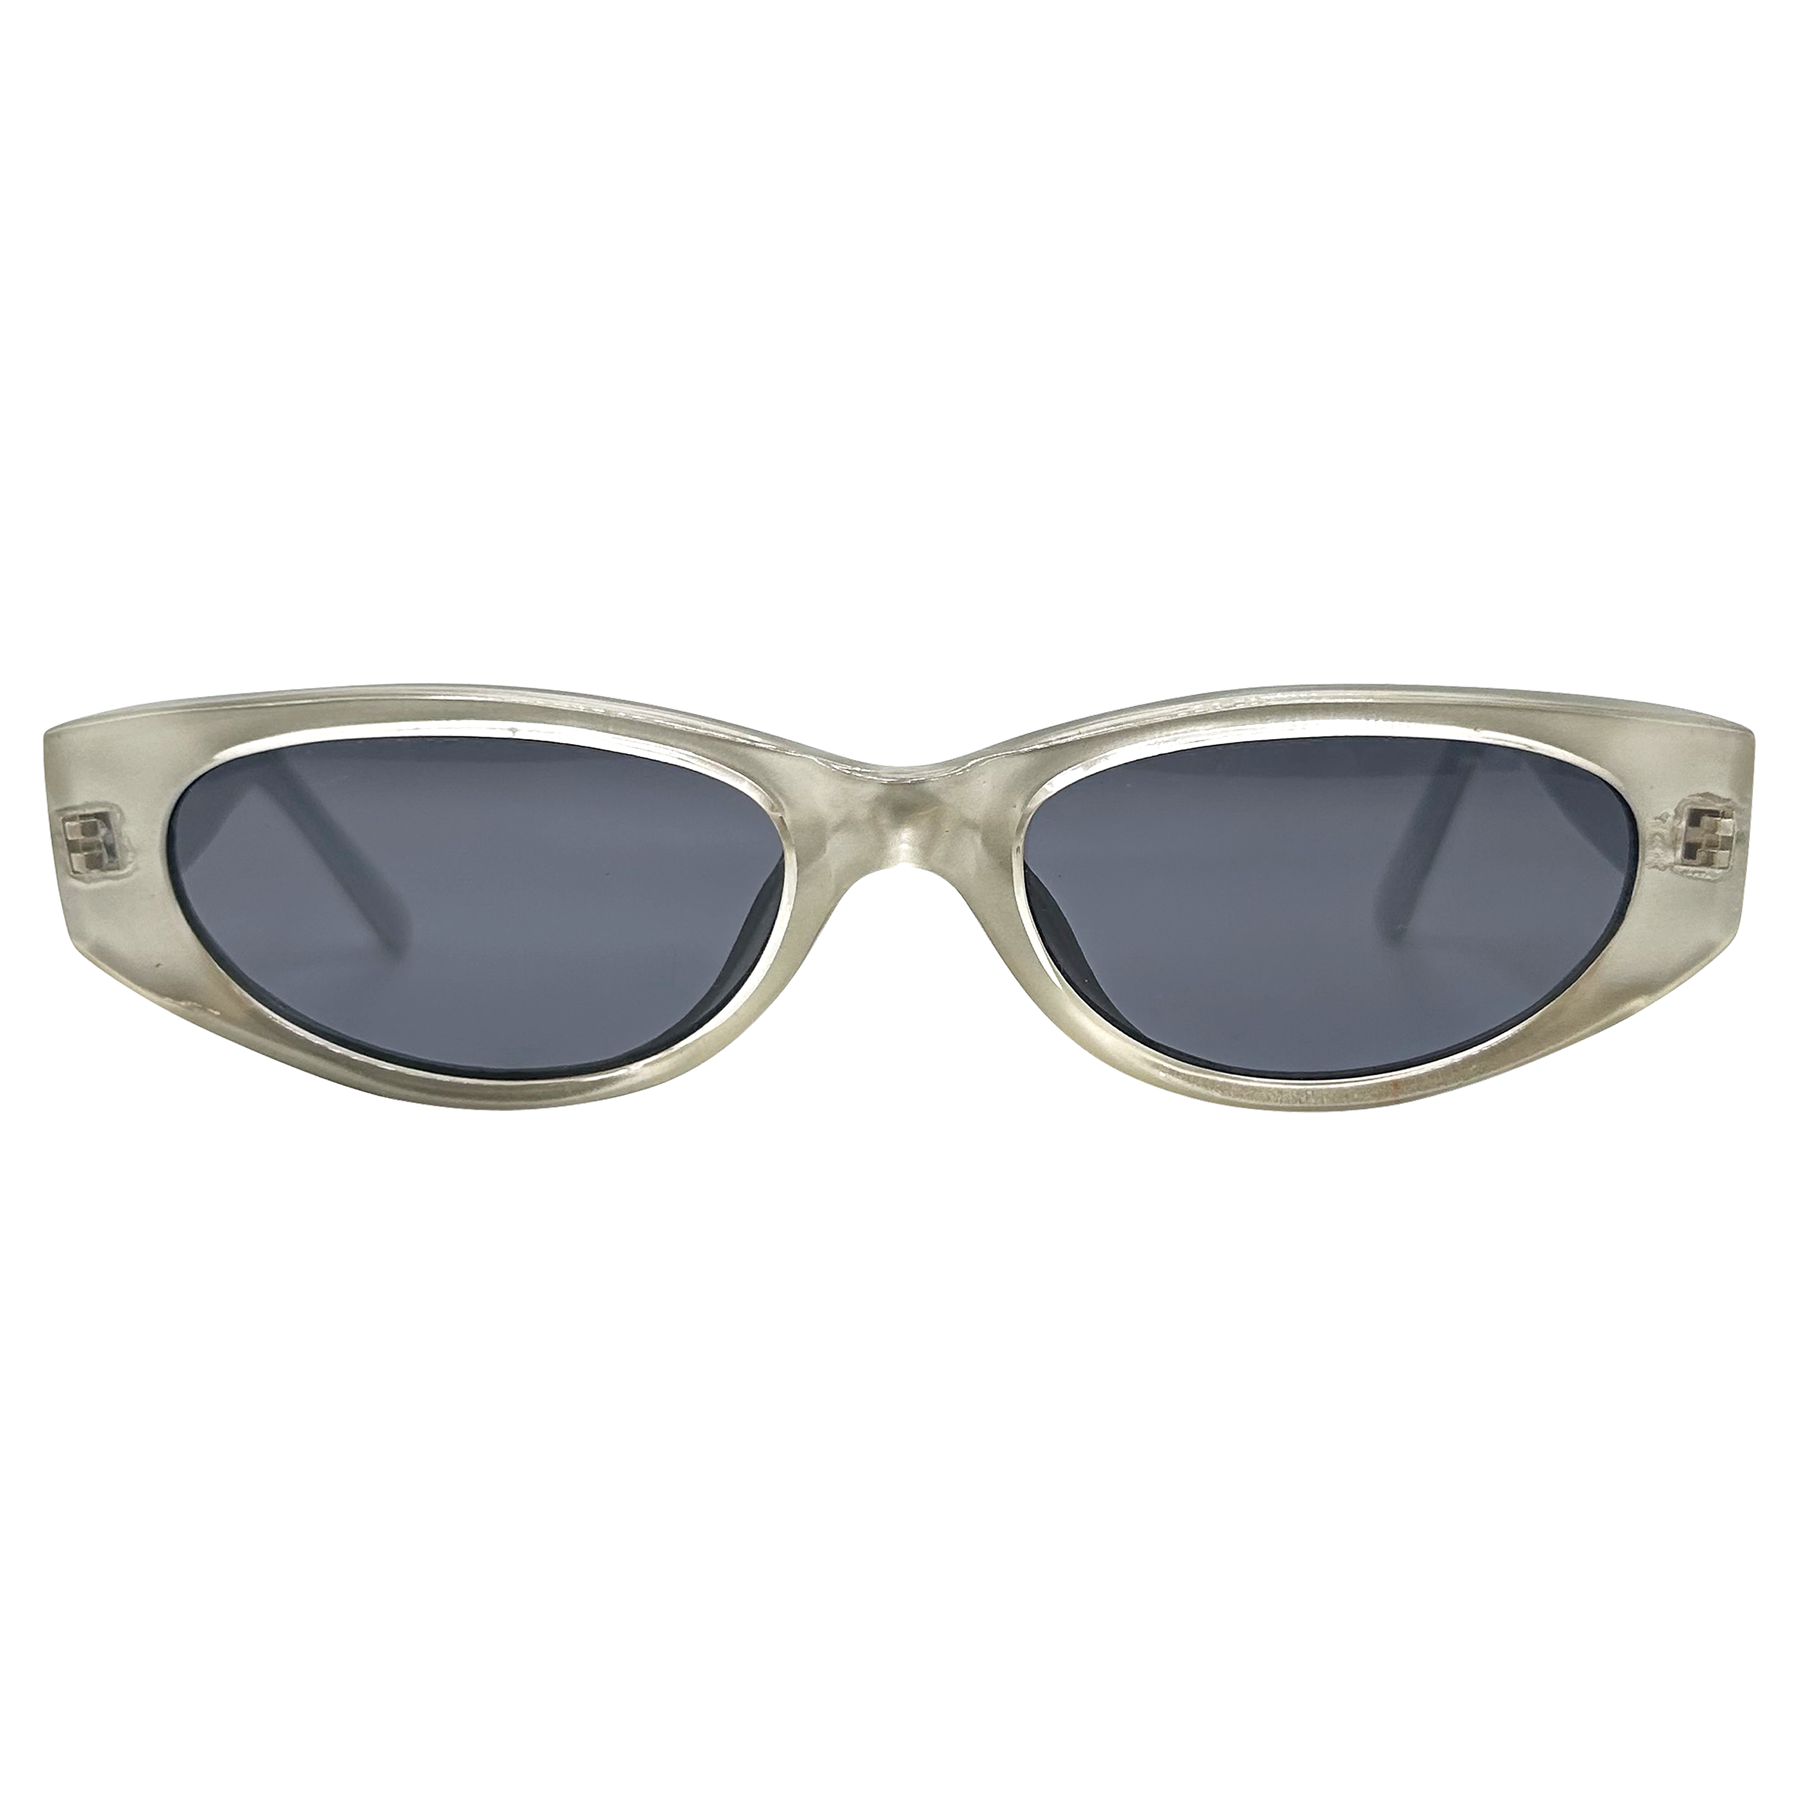 IMP magic PearL Cat-Eye Sunglasses